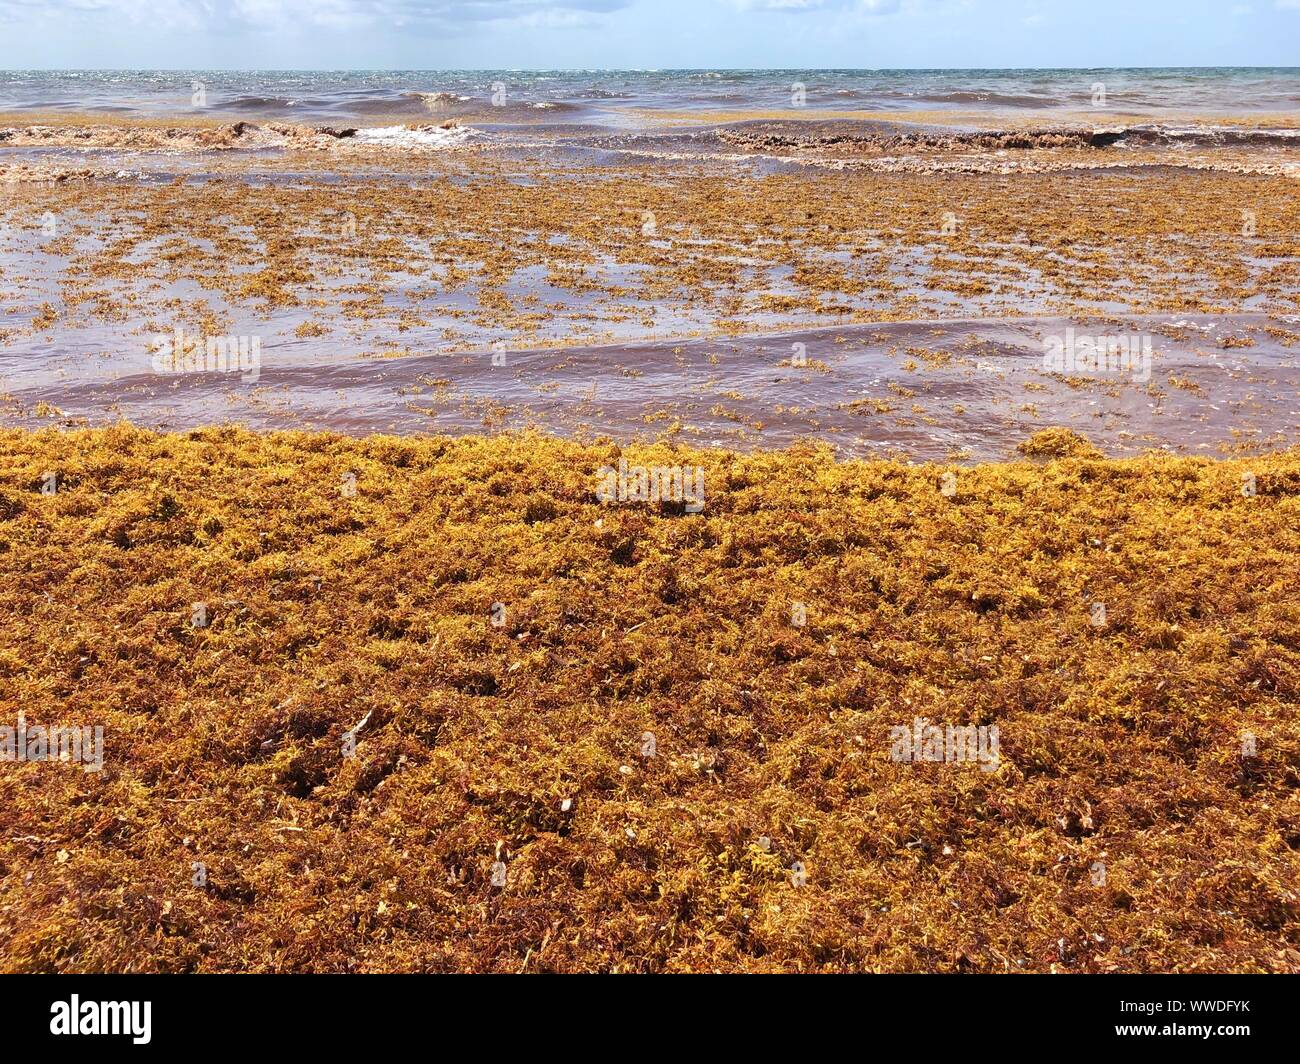 Sargassum seaweed on beach, Tulum, Yucatan Peninsula, Mexico Stock Photo